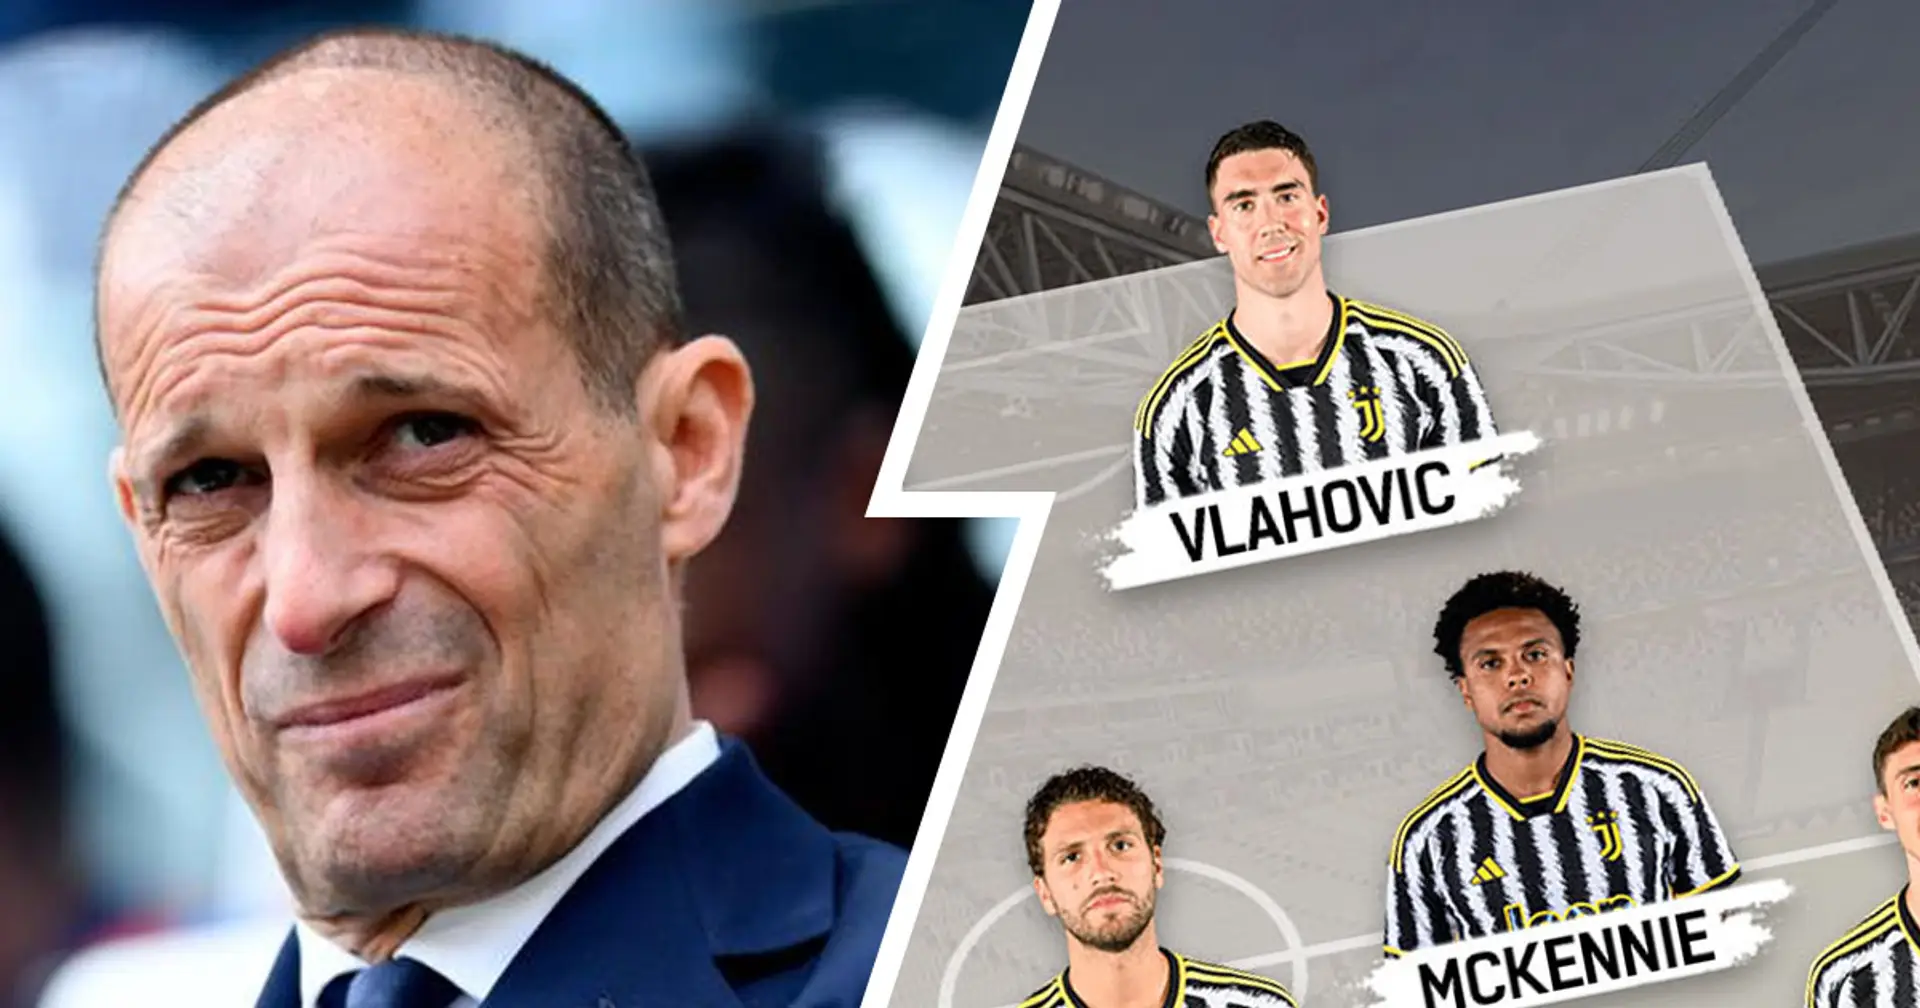 Vlahovic guida l'attacco, 2 ballottaggi da sciogliere: Cagliari vs Juventus, probabili formazioni e ultime notizie